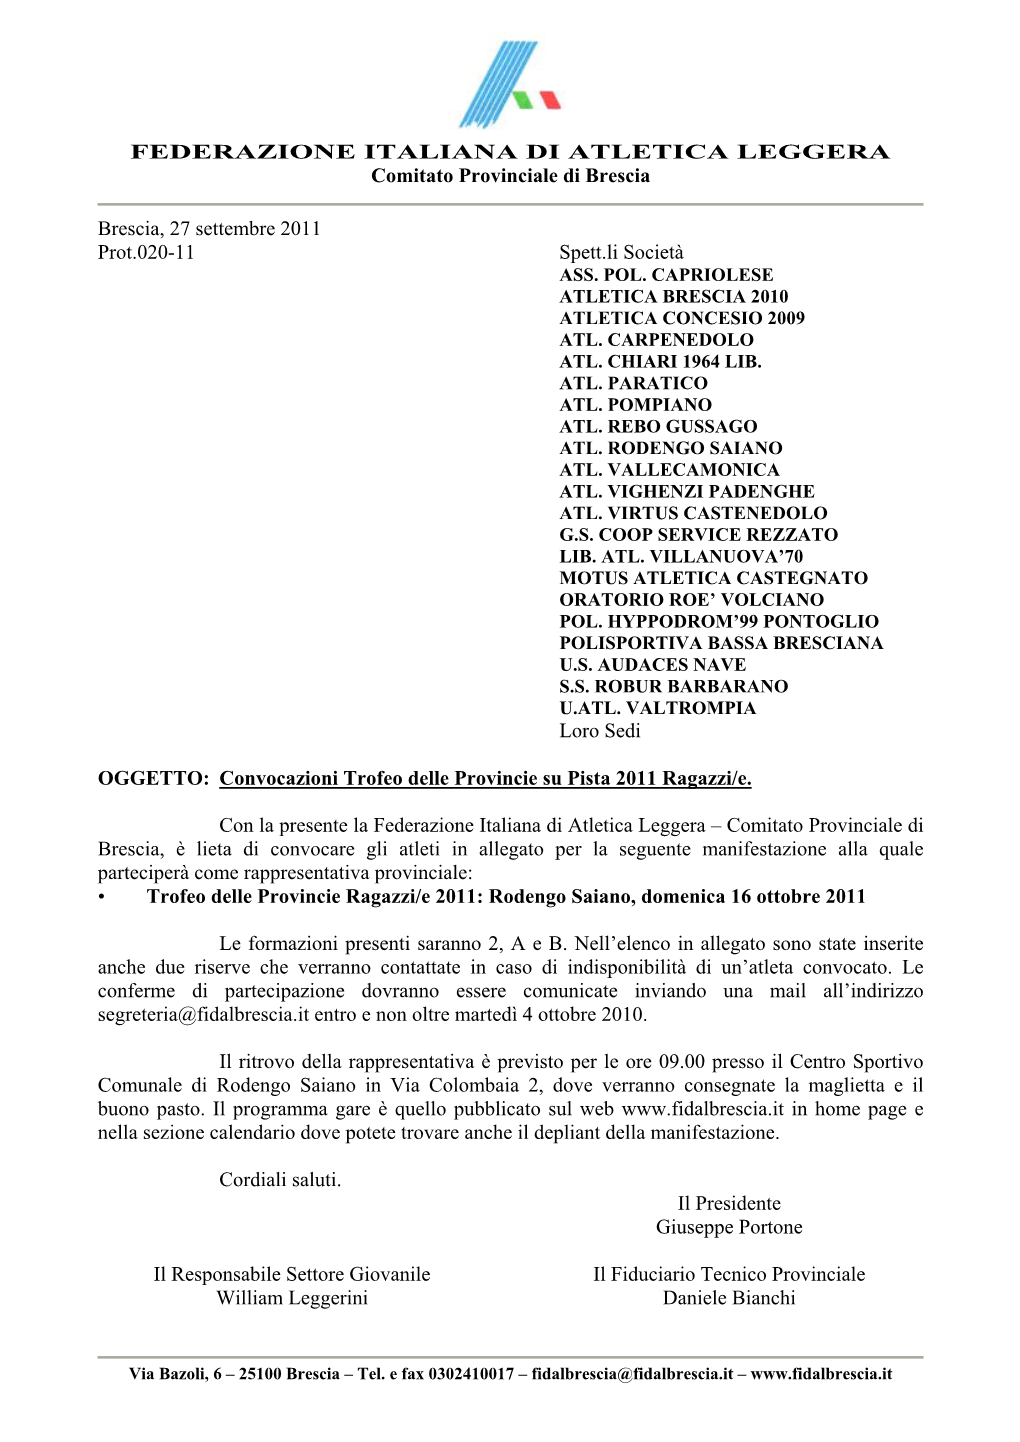 FEDERAZIONE ITALIANA DI ATLETICA LEGGERA Comitato Provinciale Di Brescia